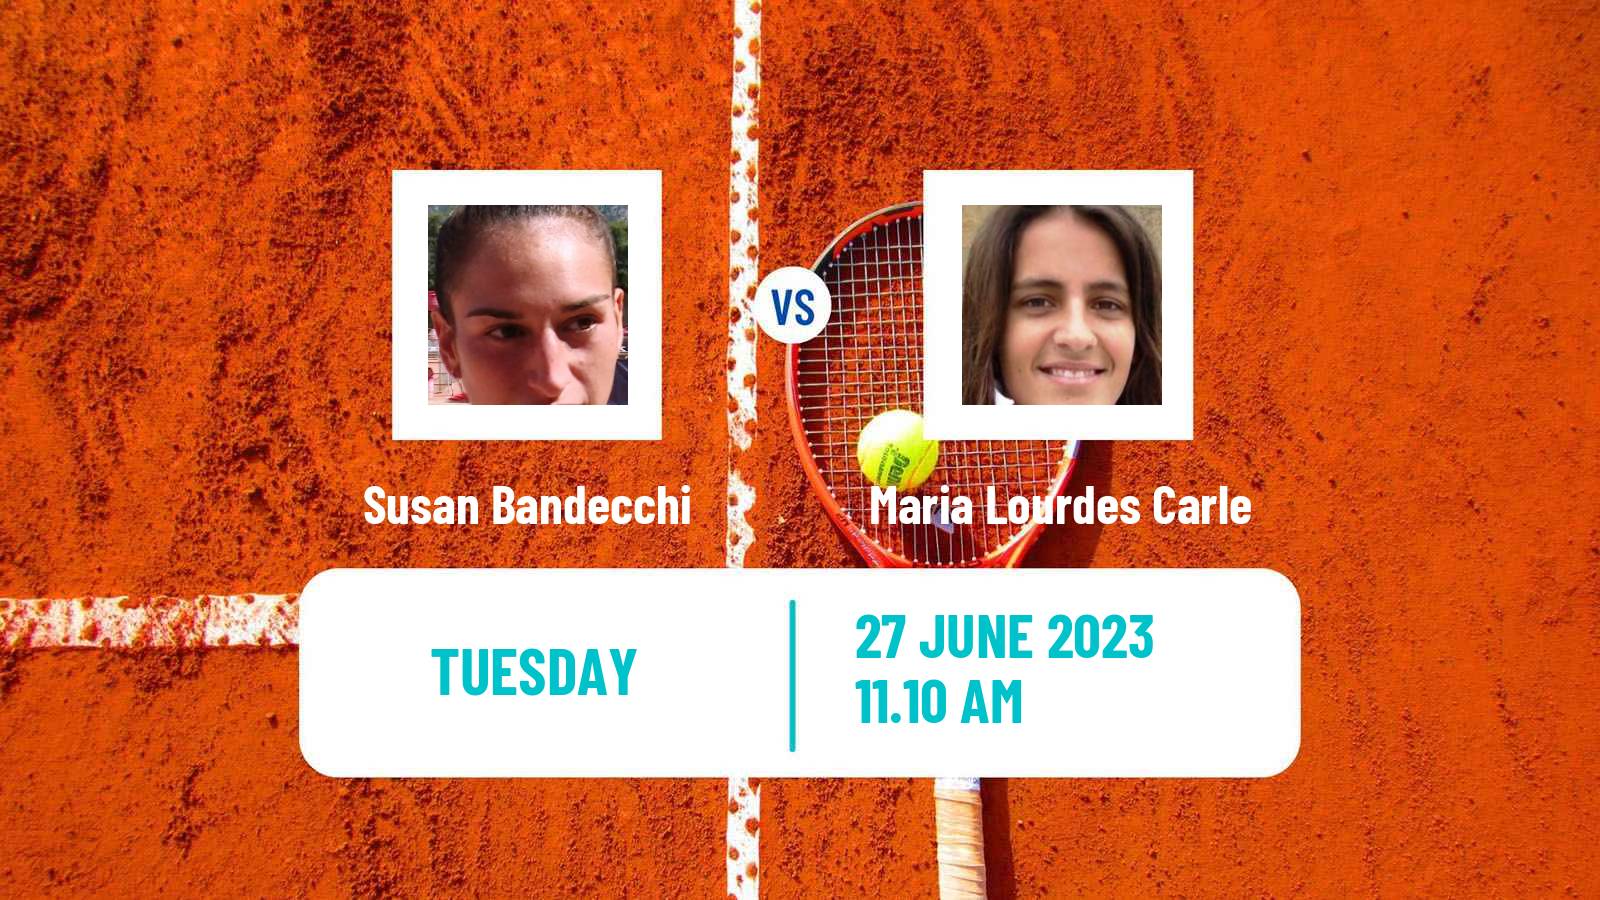 Tennis WTA Wimbledon Susan Bandecchi - Maria Lourdes Carle